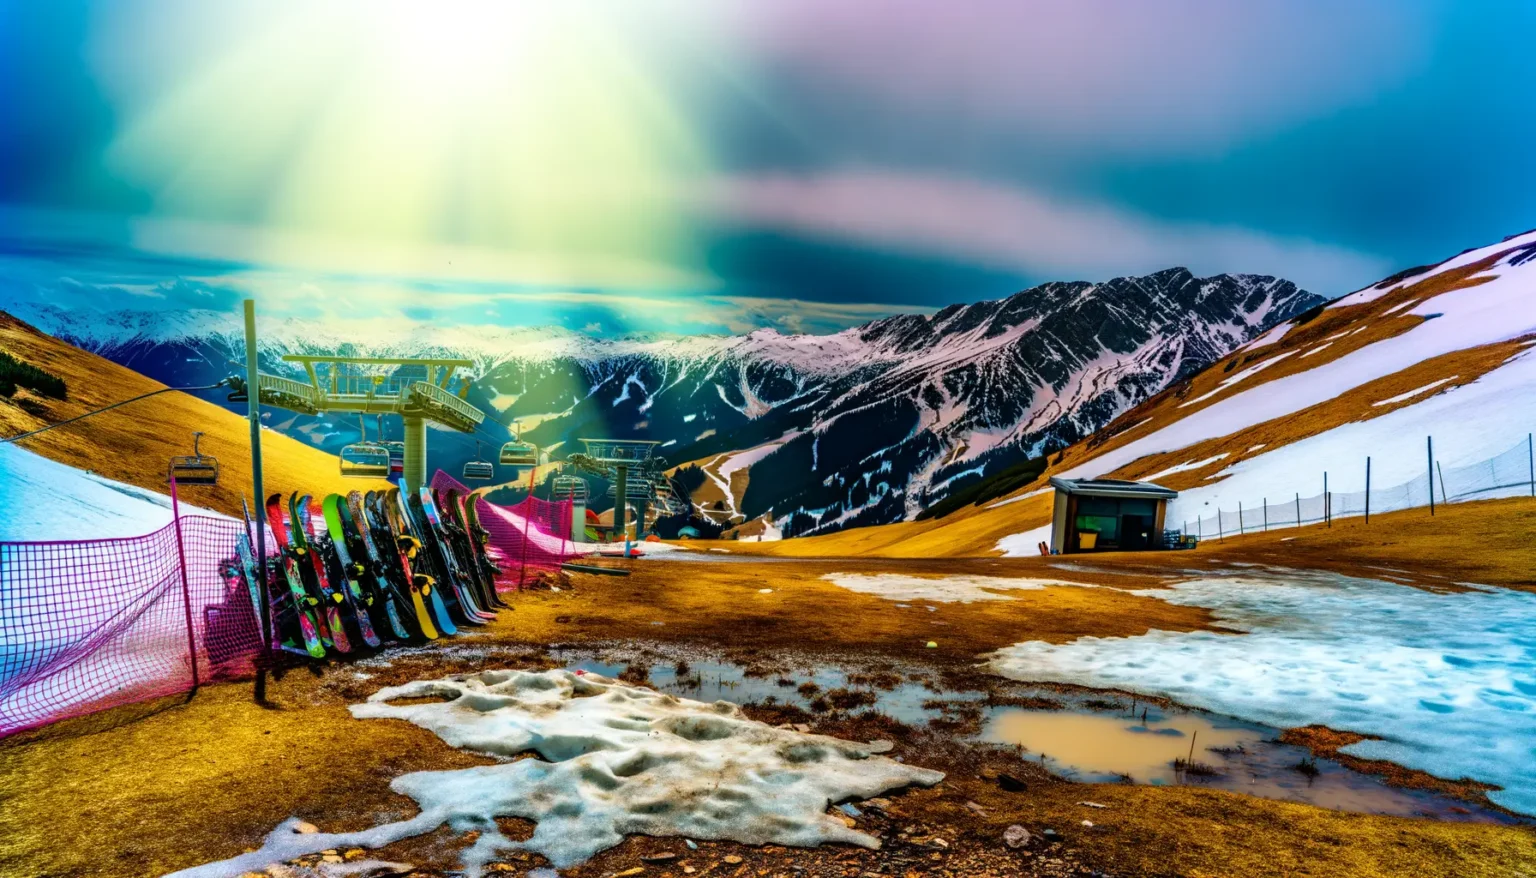 Lebendiges Bergpanorama mit schmelzendem Schnee und einer Sesselbahn im Hintergrund, vorne sind Skier an einem Zaun abgestellt, Sonnenstrahlen fluten den Himmel über den majestätischen, schneebedeckten Gipfeln.